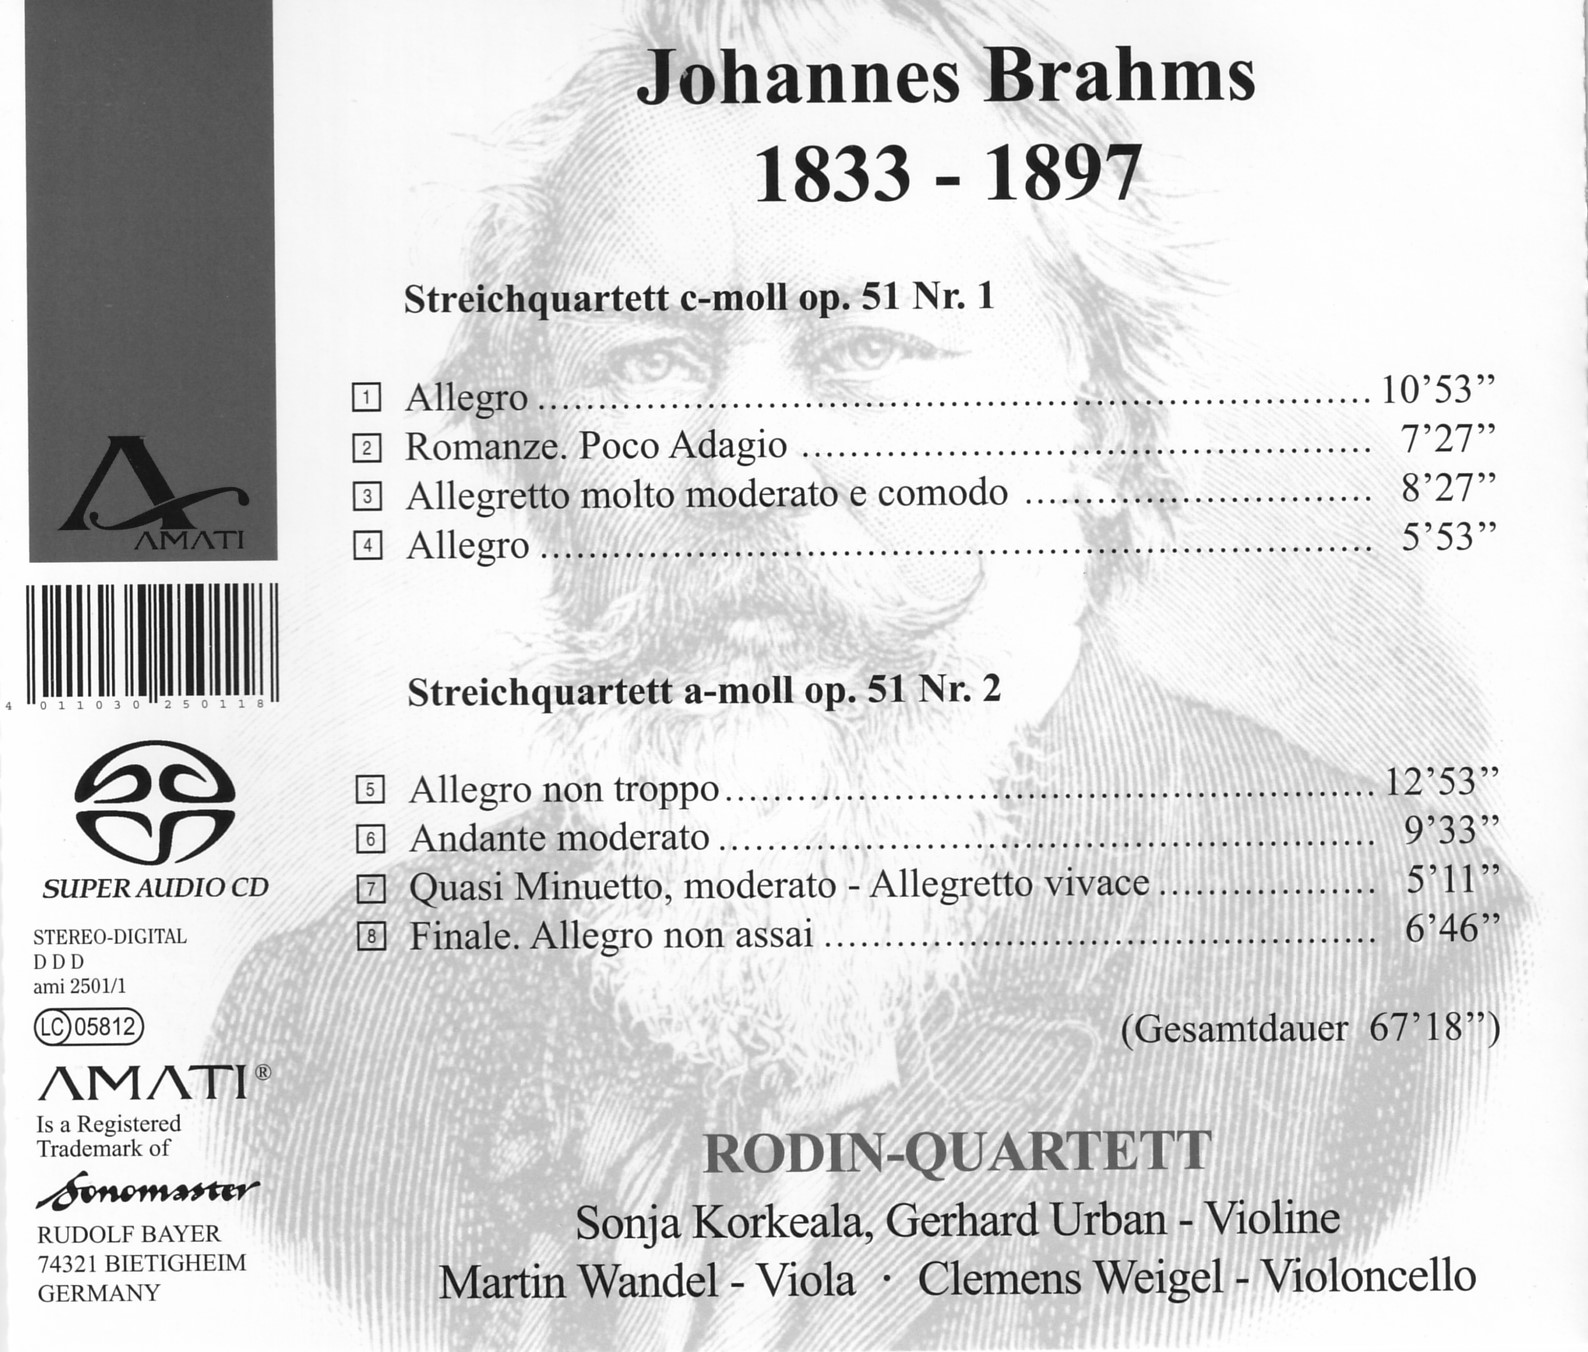 RODIN-QUARTETT - Brahms Op.51